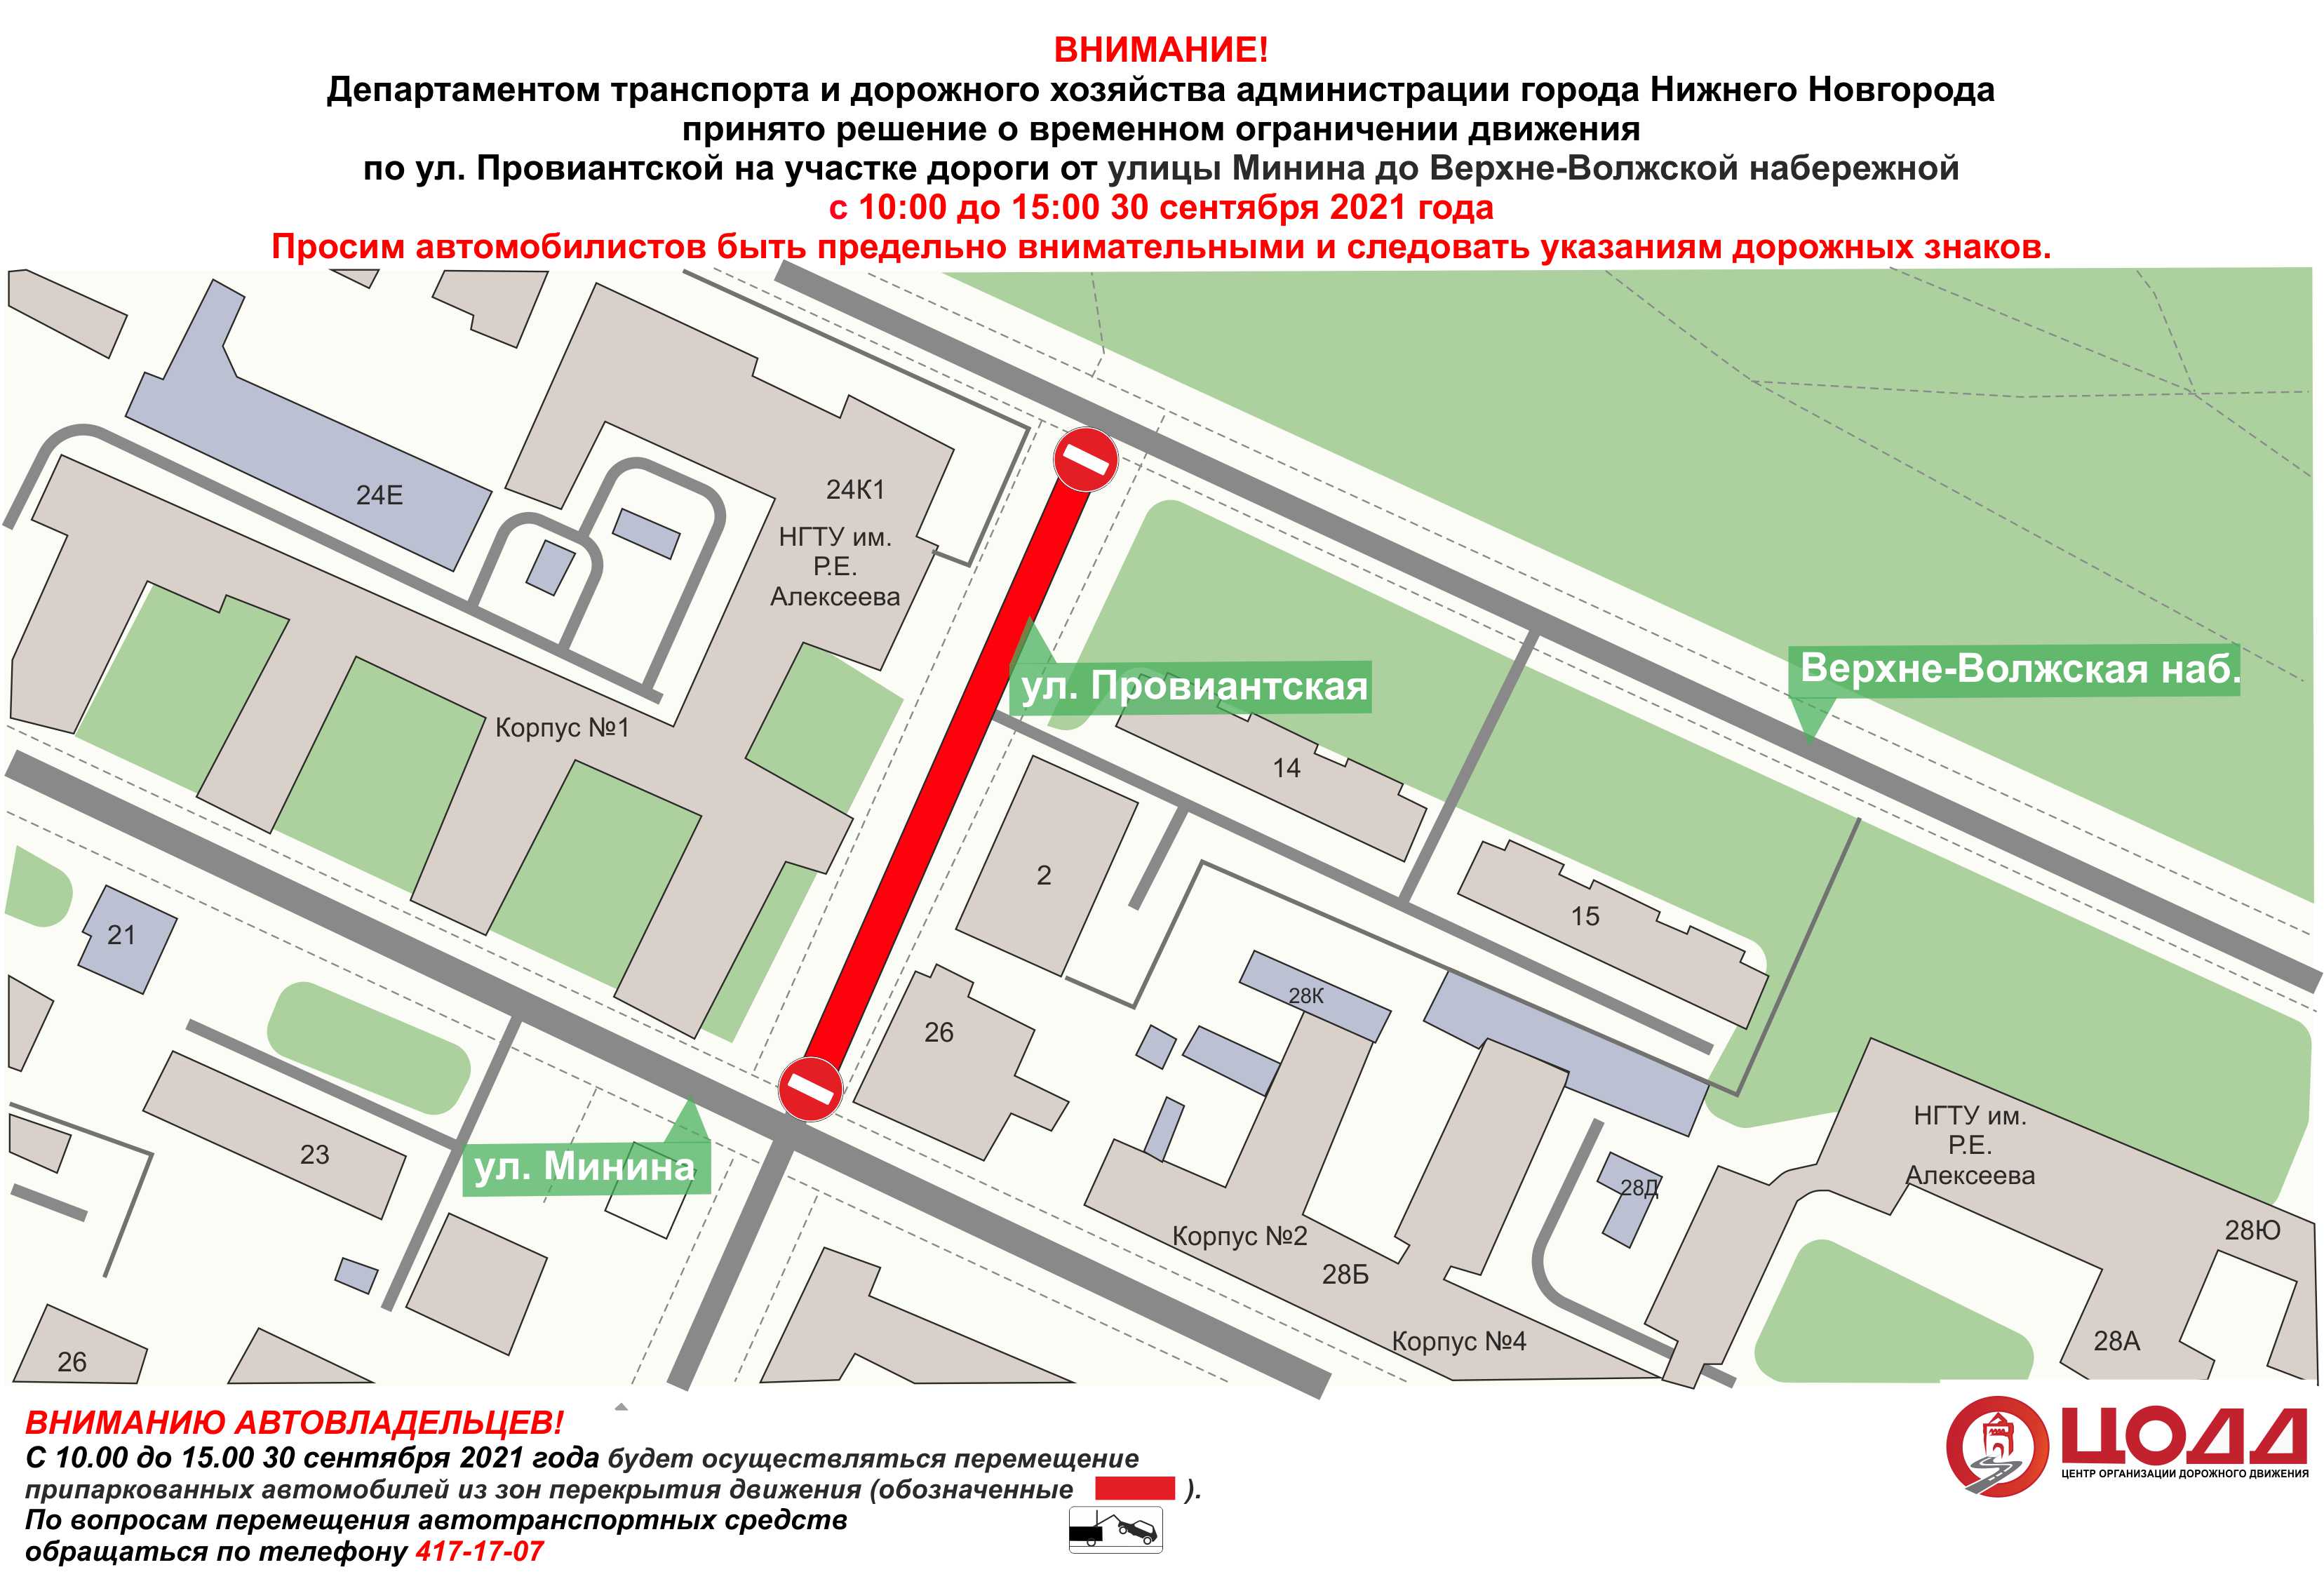 Участок Провиантской улицы перекроют в Нижнем Новгороде 30 сентября - фото 1